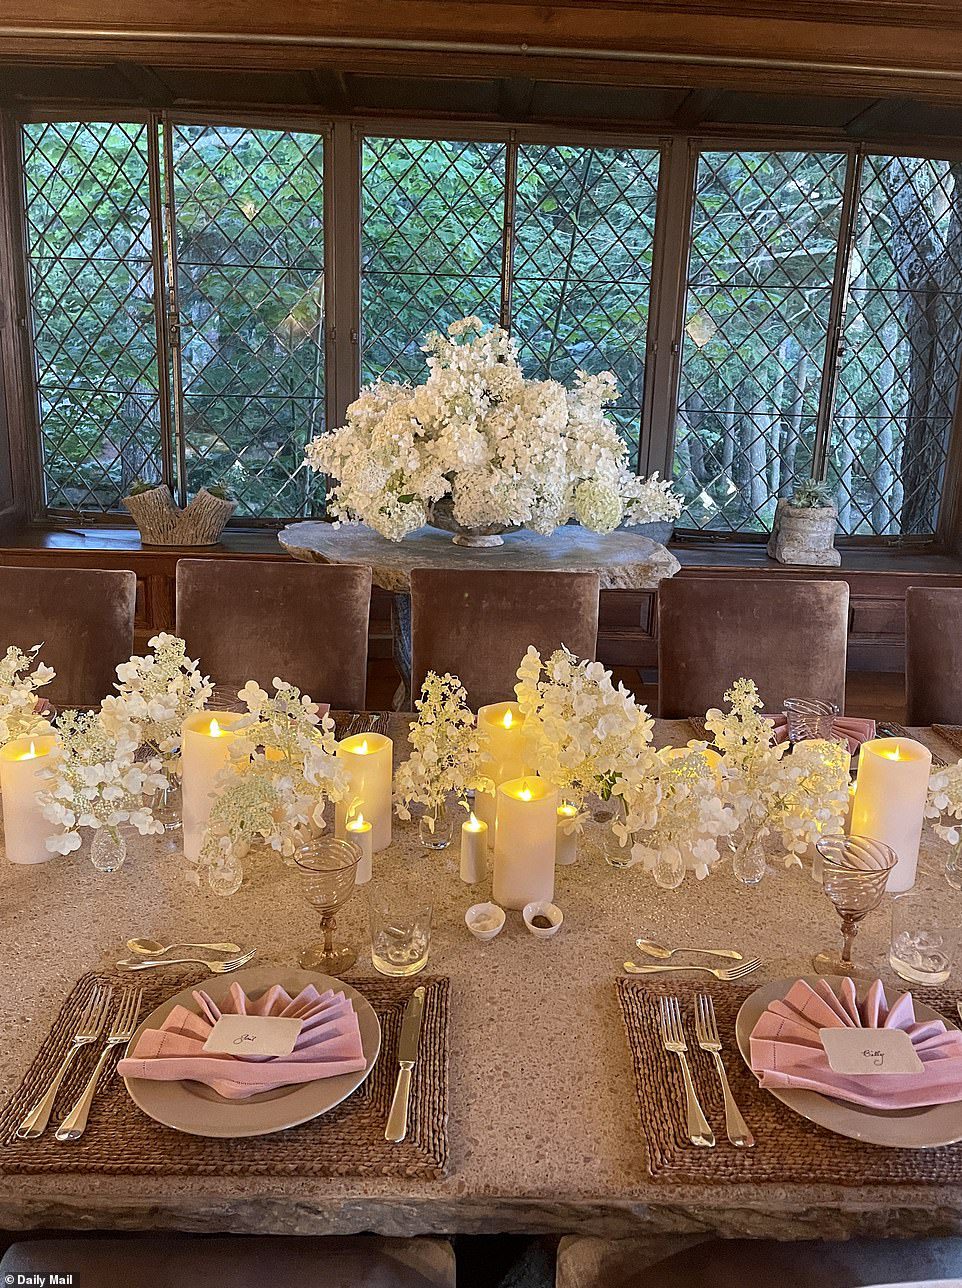 Cahaya lilin: Pengaturan meja mencakup nuansa putih, merah muda, dan cokelat